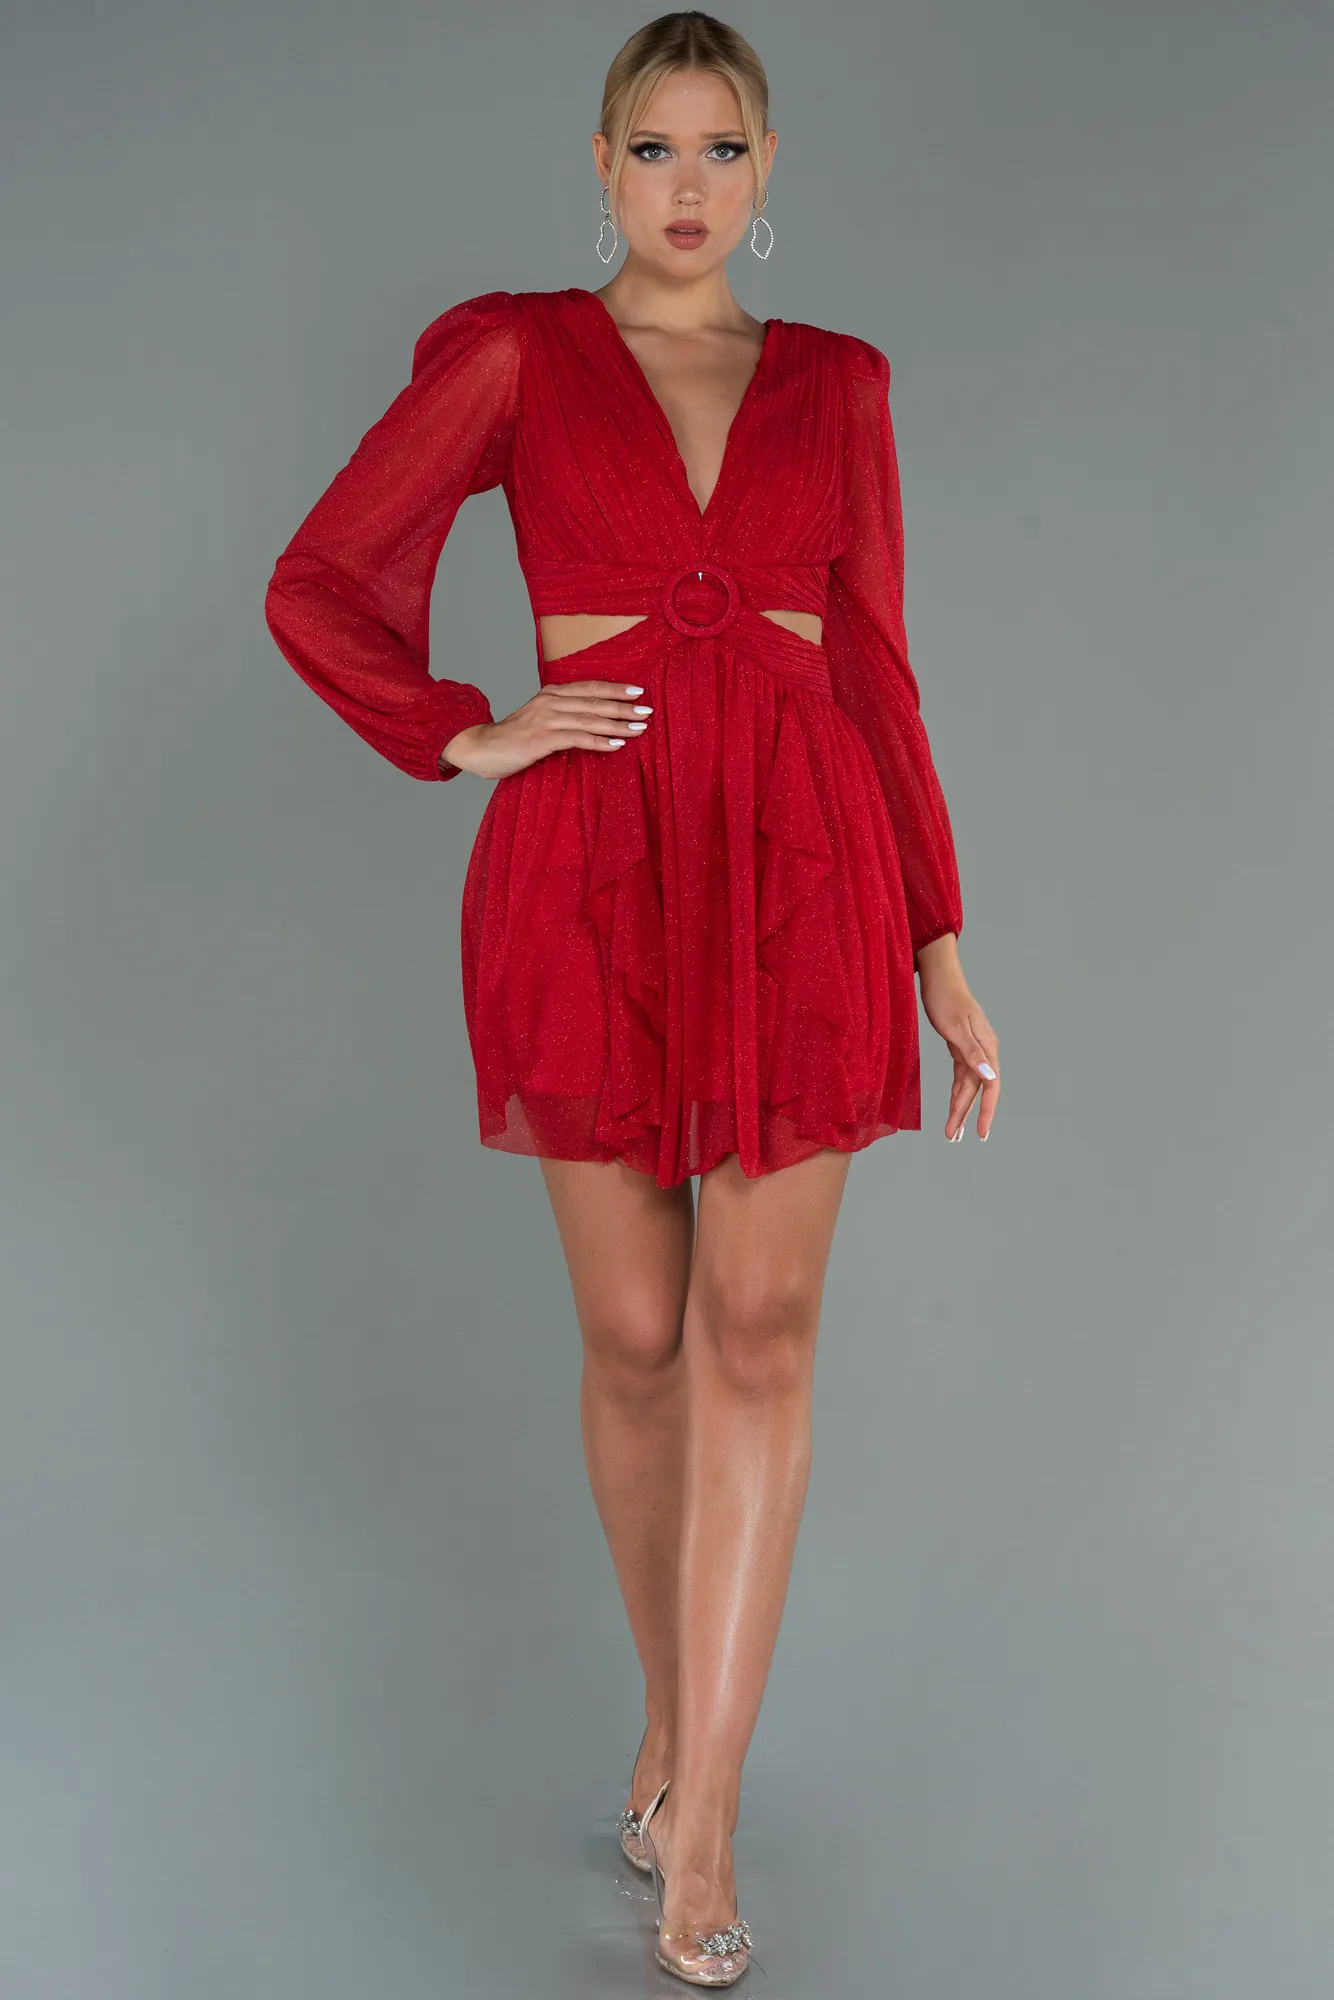 Red-Short Invitation Dress ABK1743